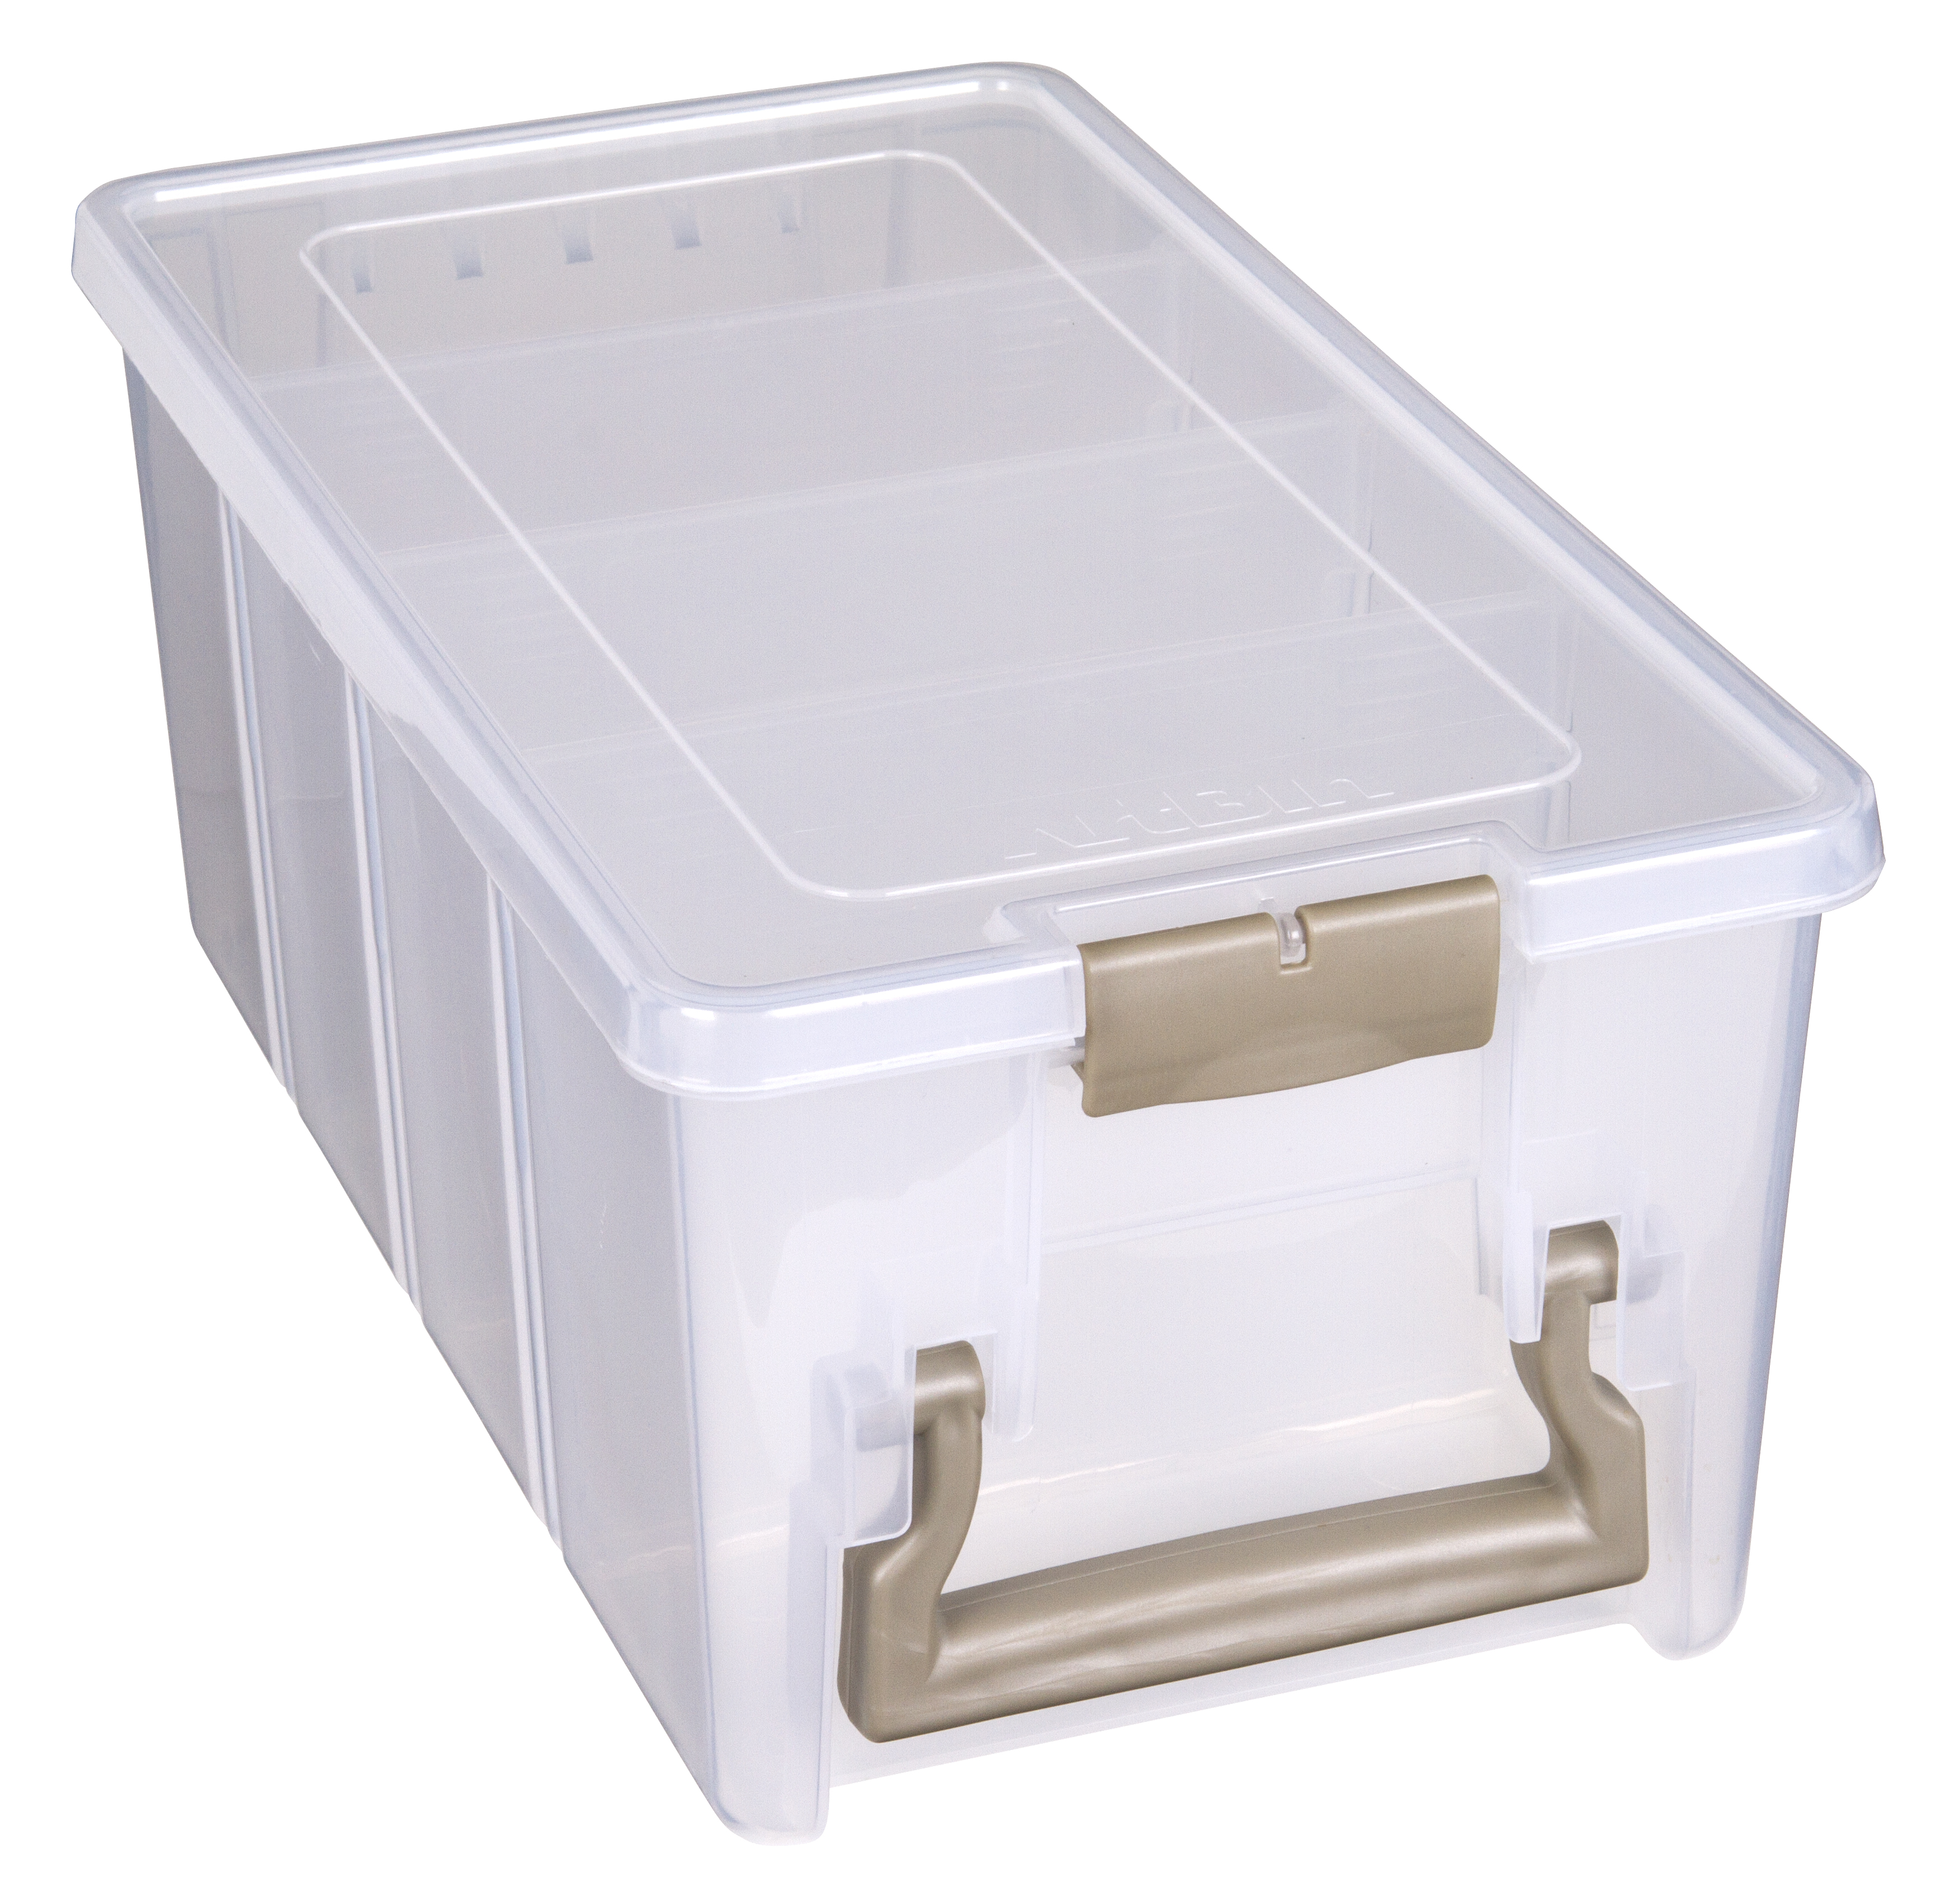 art bin, Storage & Organization, Craftphoto Storage Containers